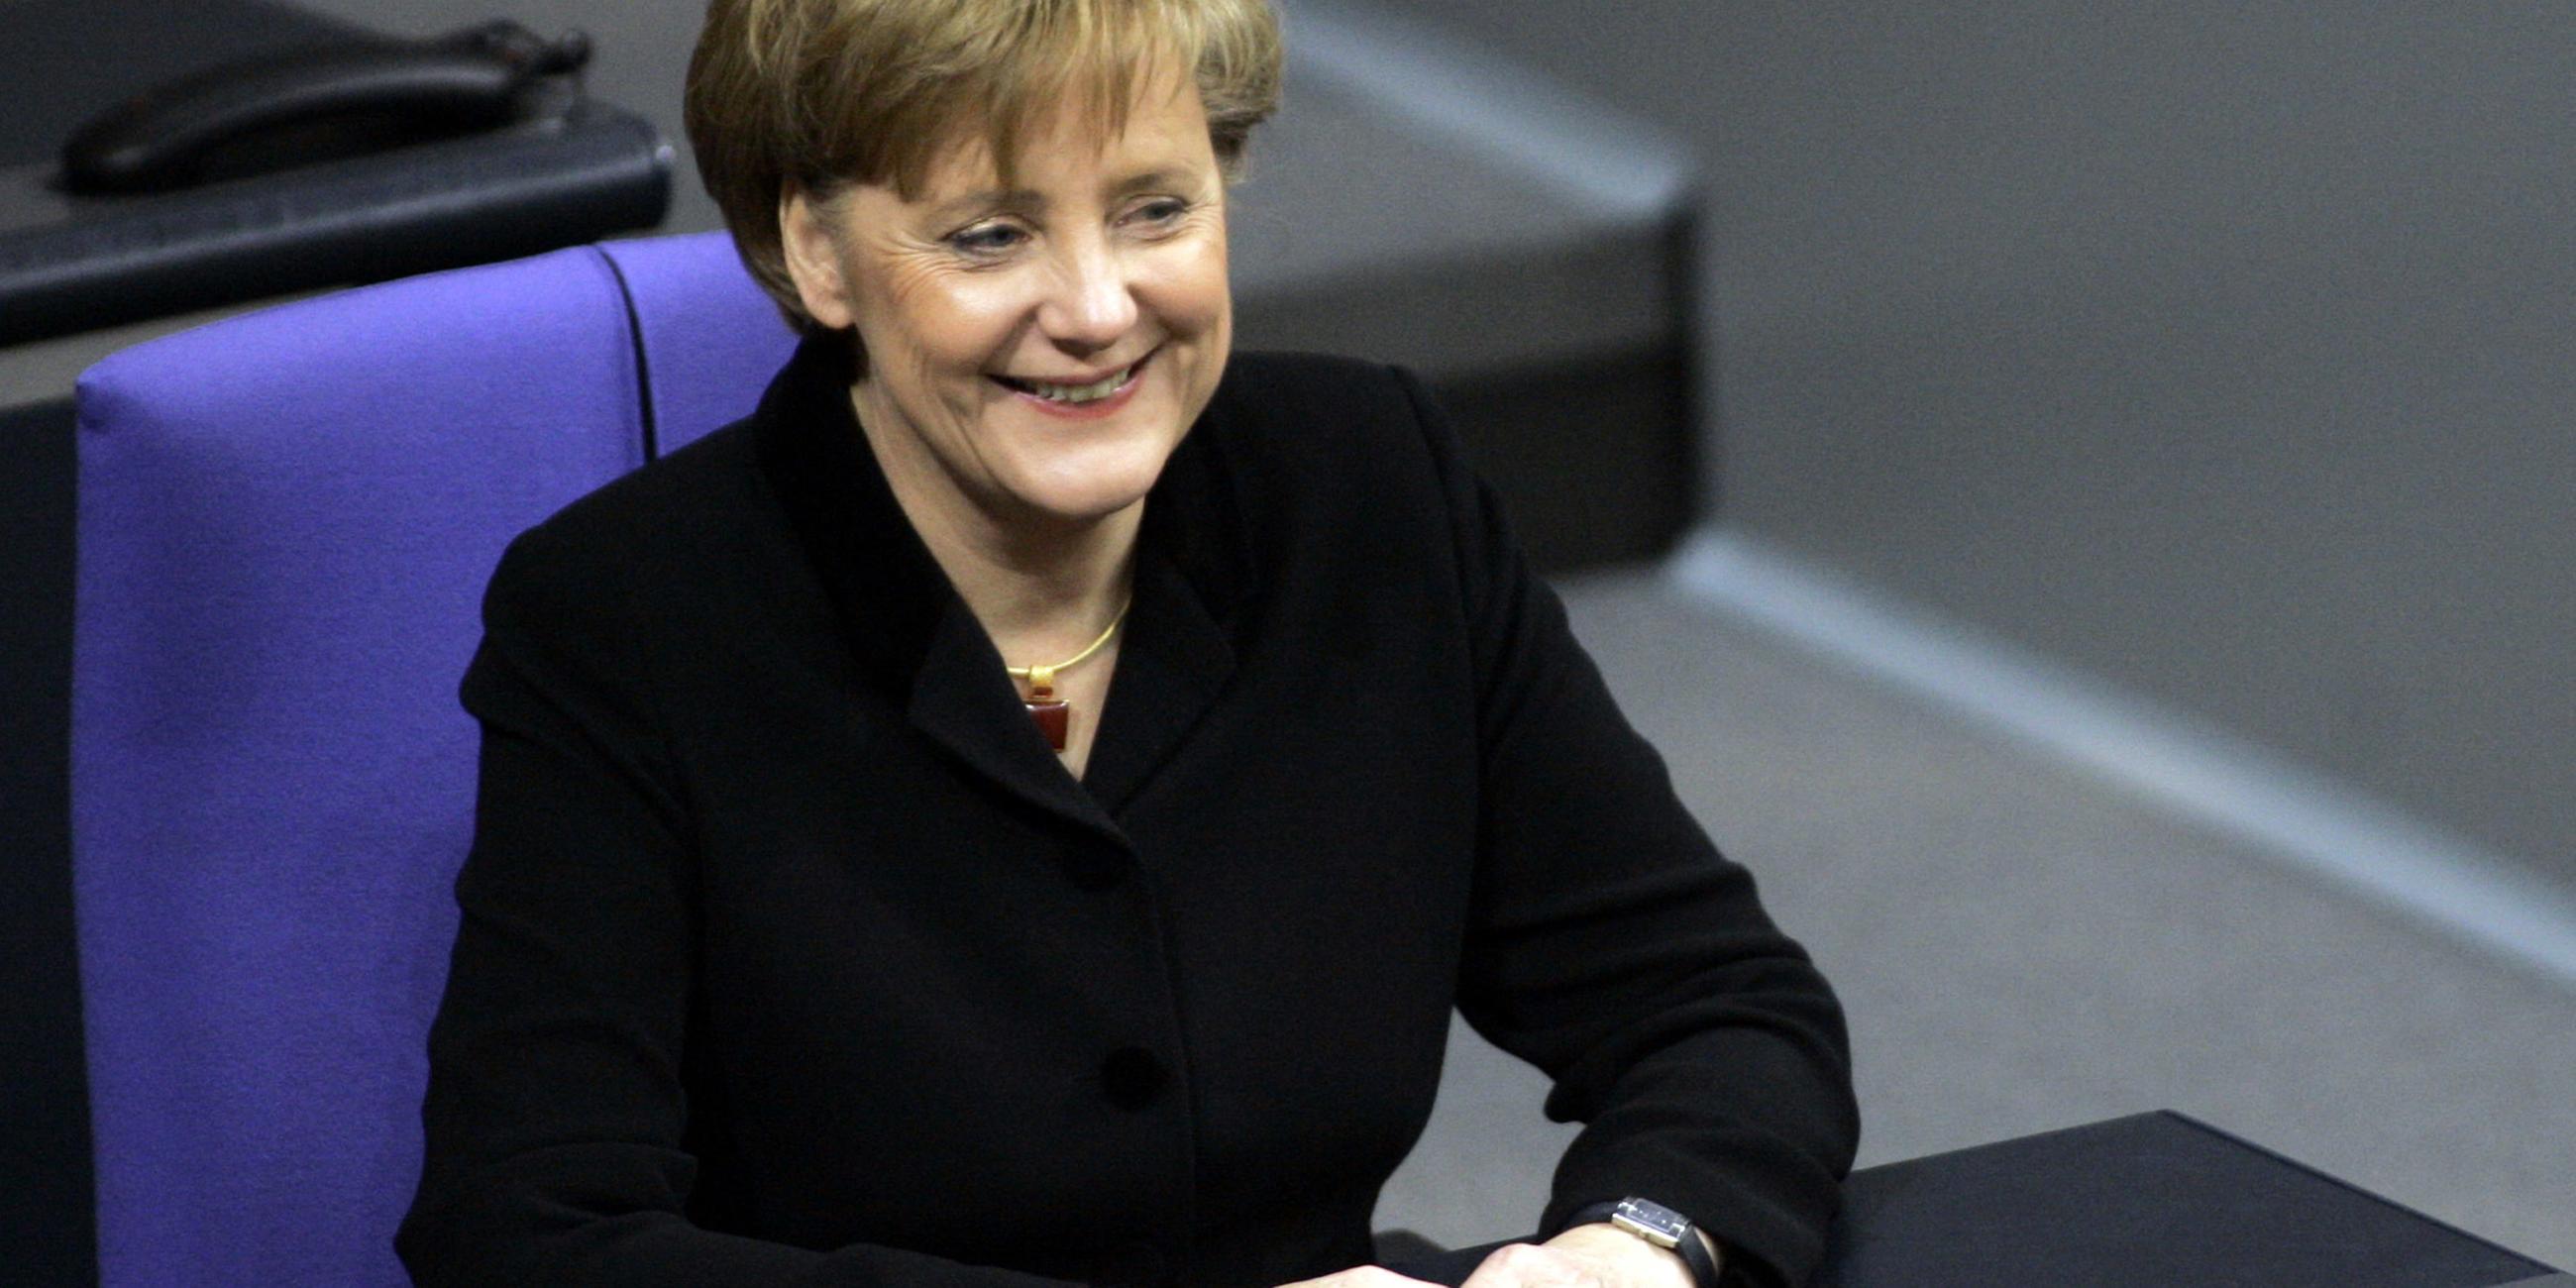 Archiv: Angela Merkel am 22.11.2005 in Berlin